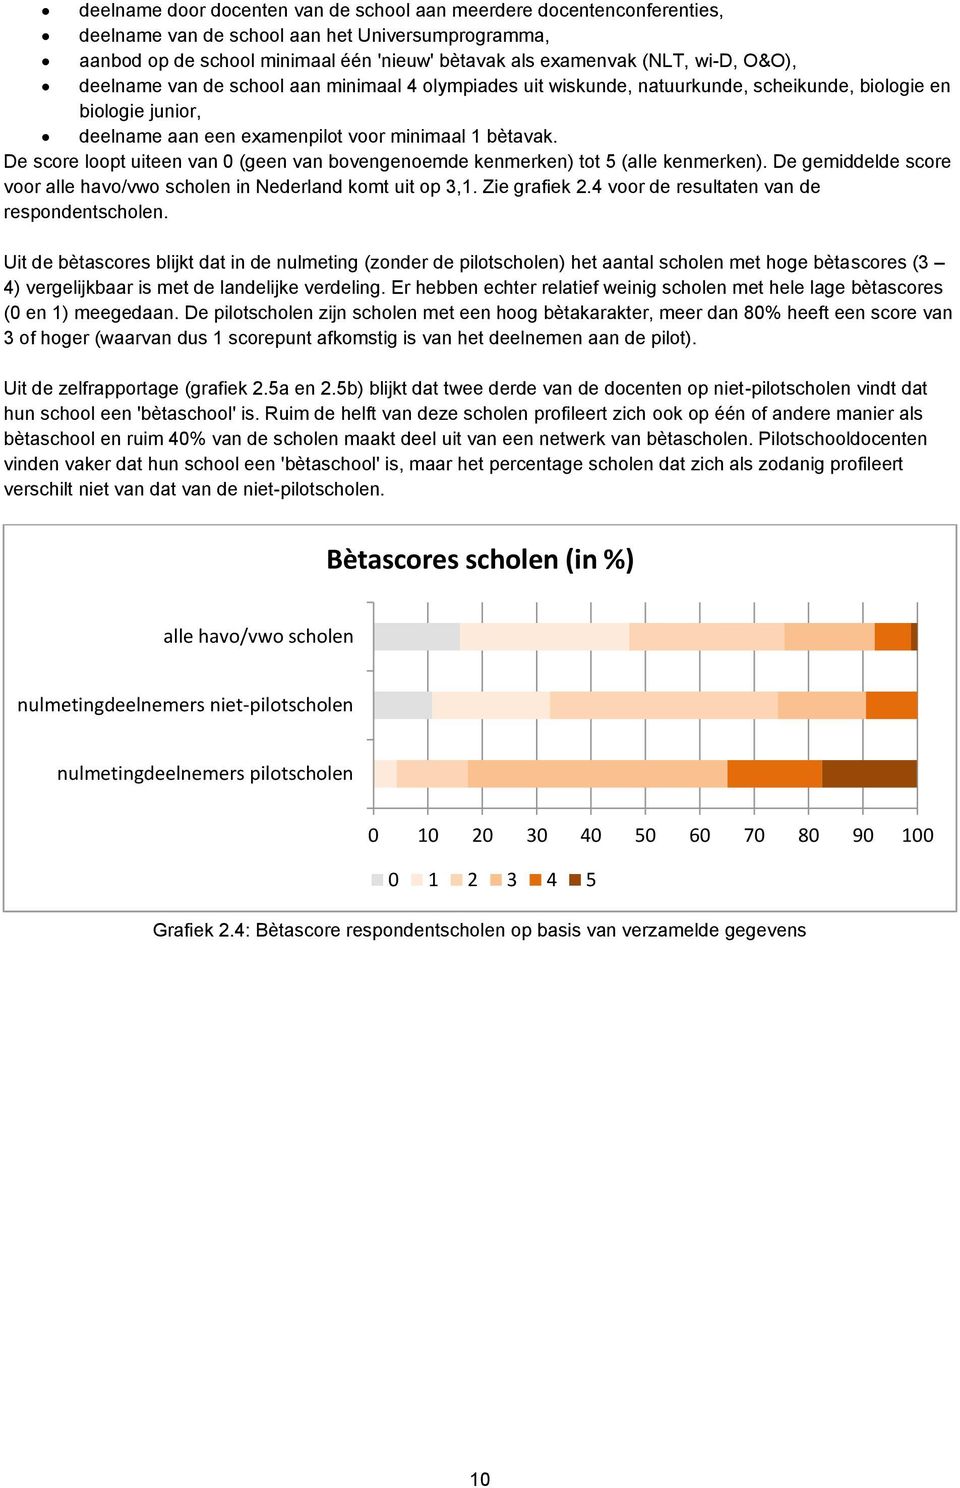 De score loopt uiteen van 0 (geen van bovengenoemde kenmerken) tot 5 (alle kenmerken). De gemiddelde score voor alle havo/vwo scholen in Nederland komt uit op 3,1. Zie grafiek 2.